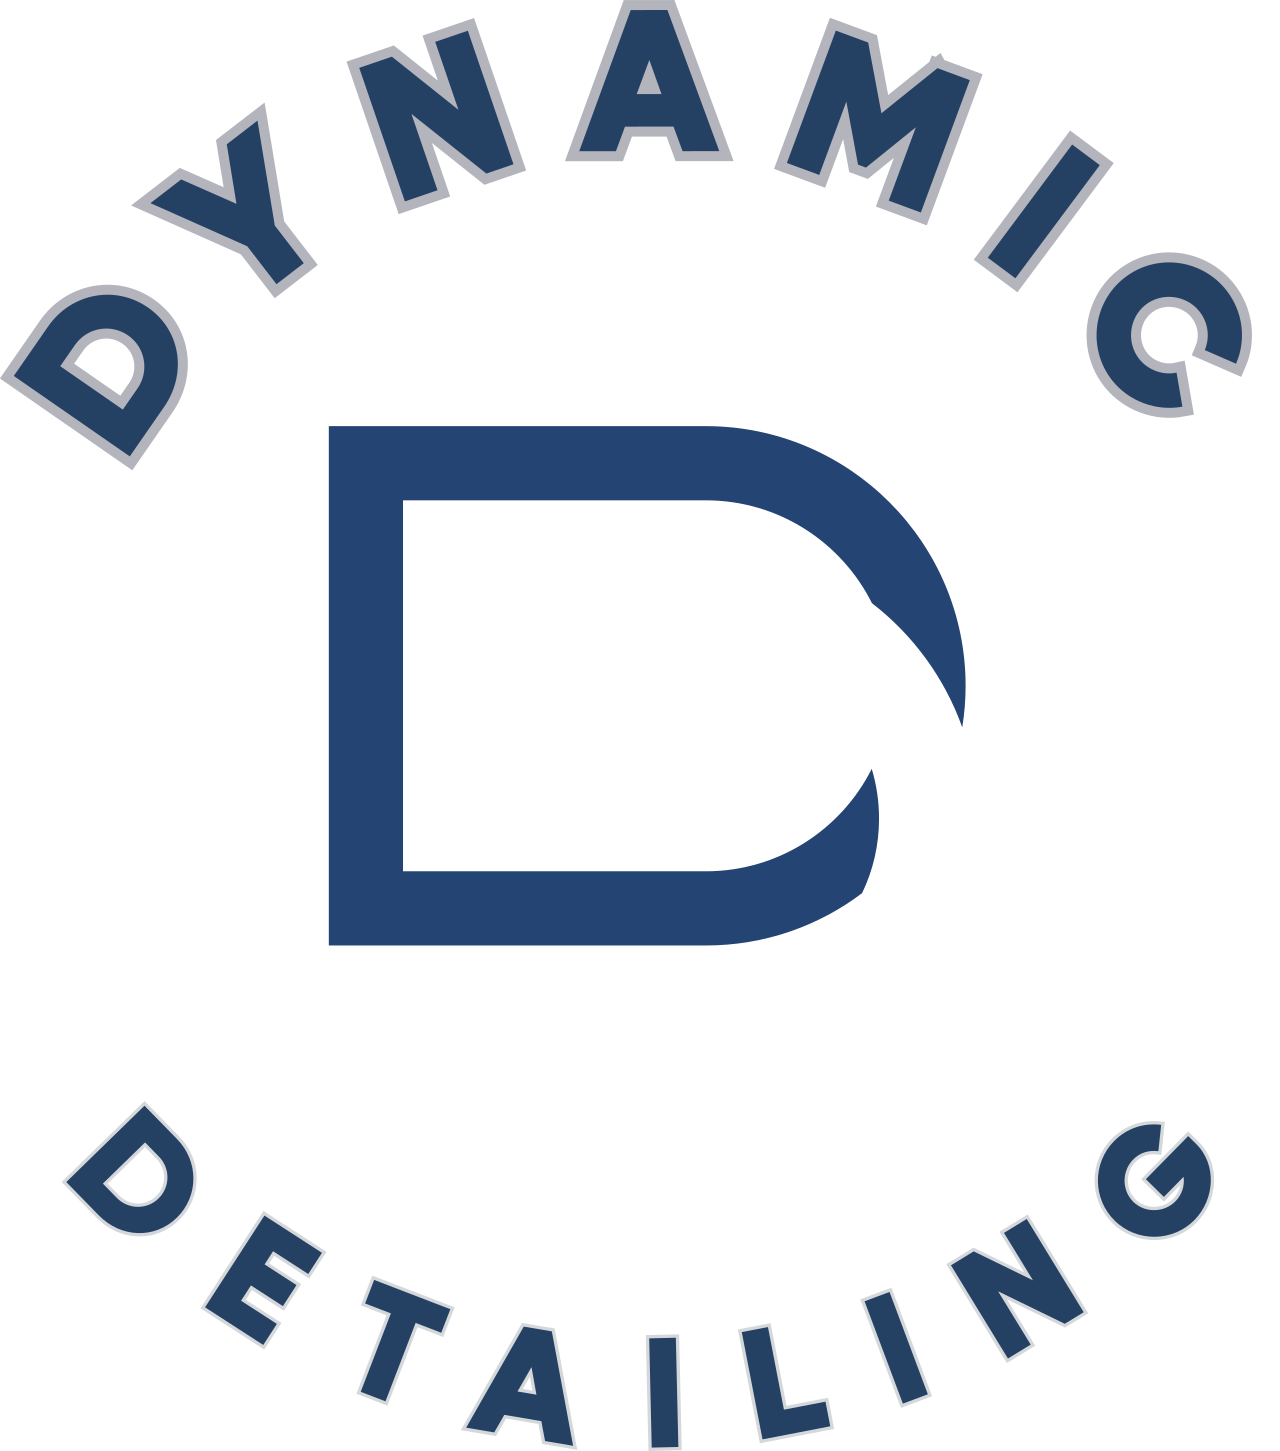 Dynamic 's web page